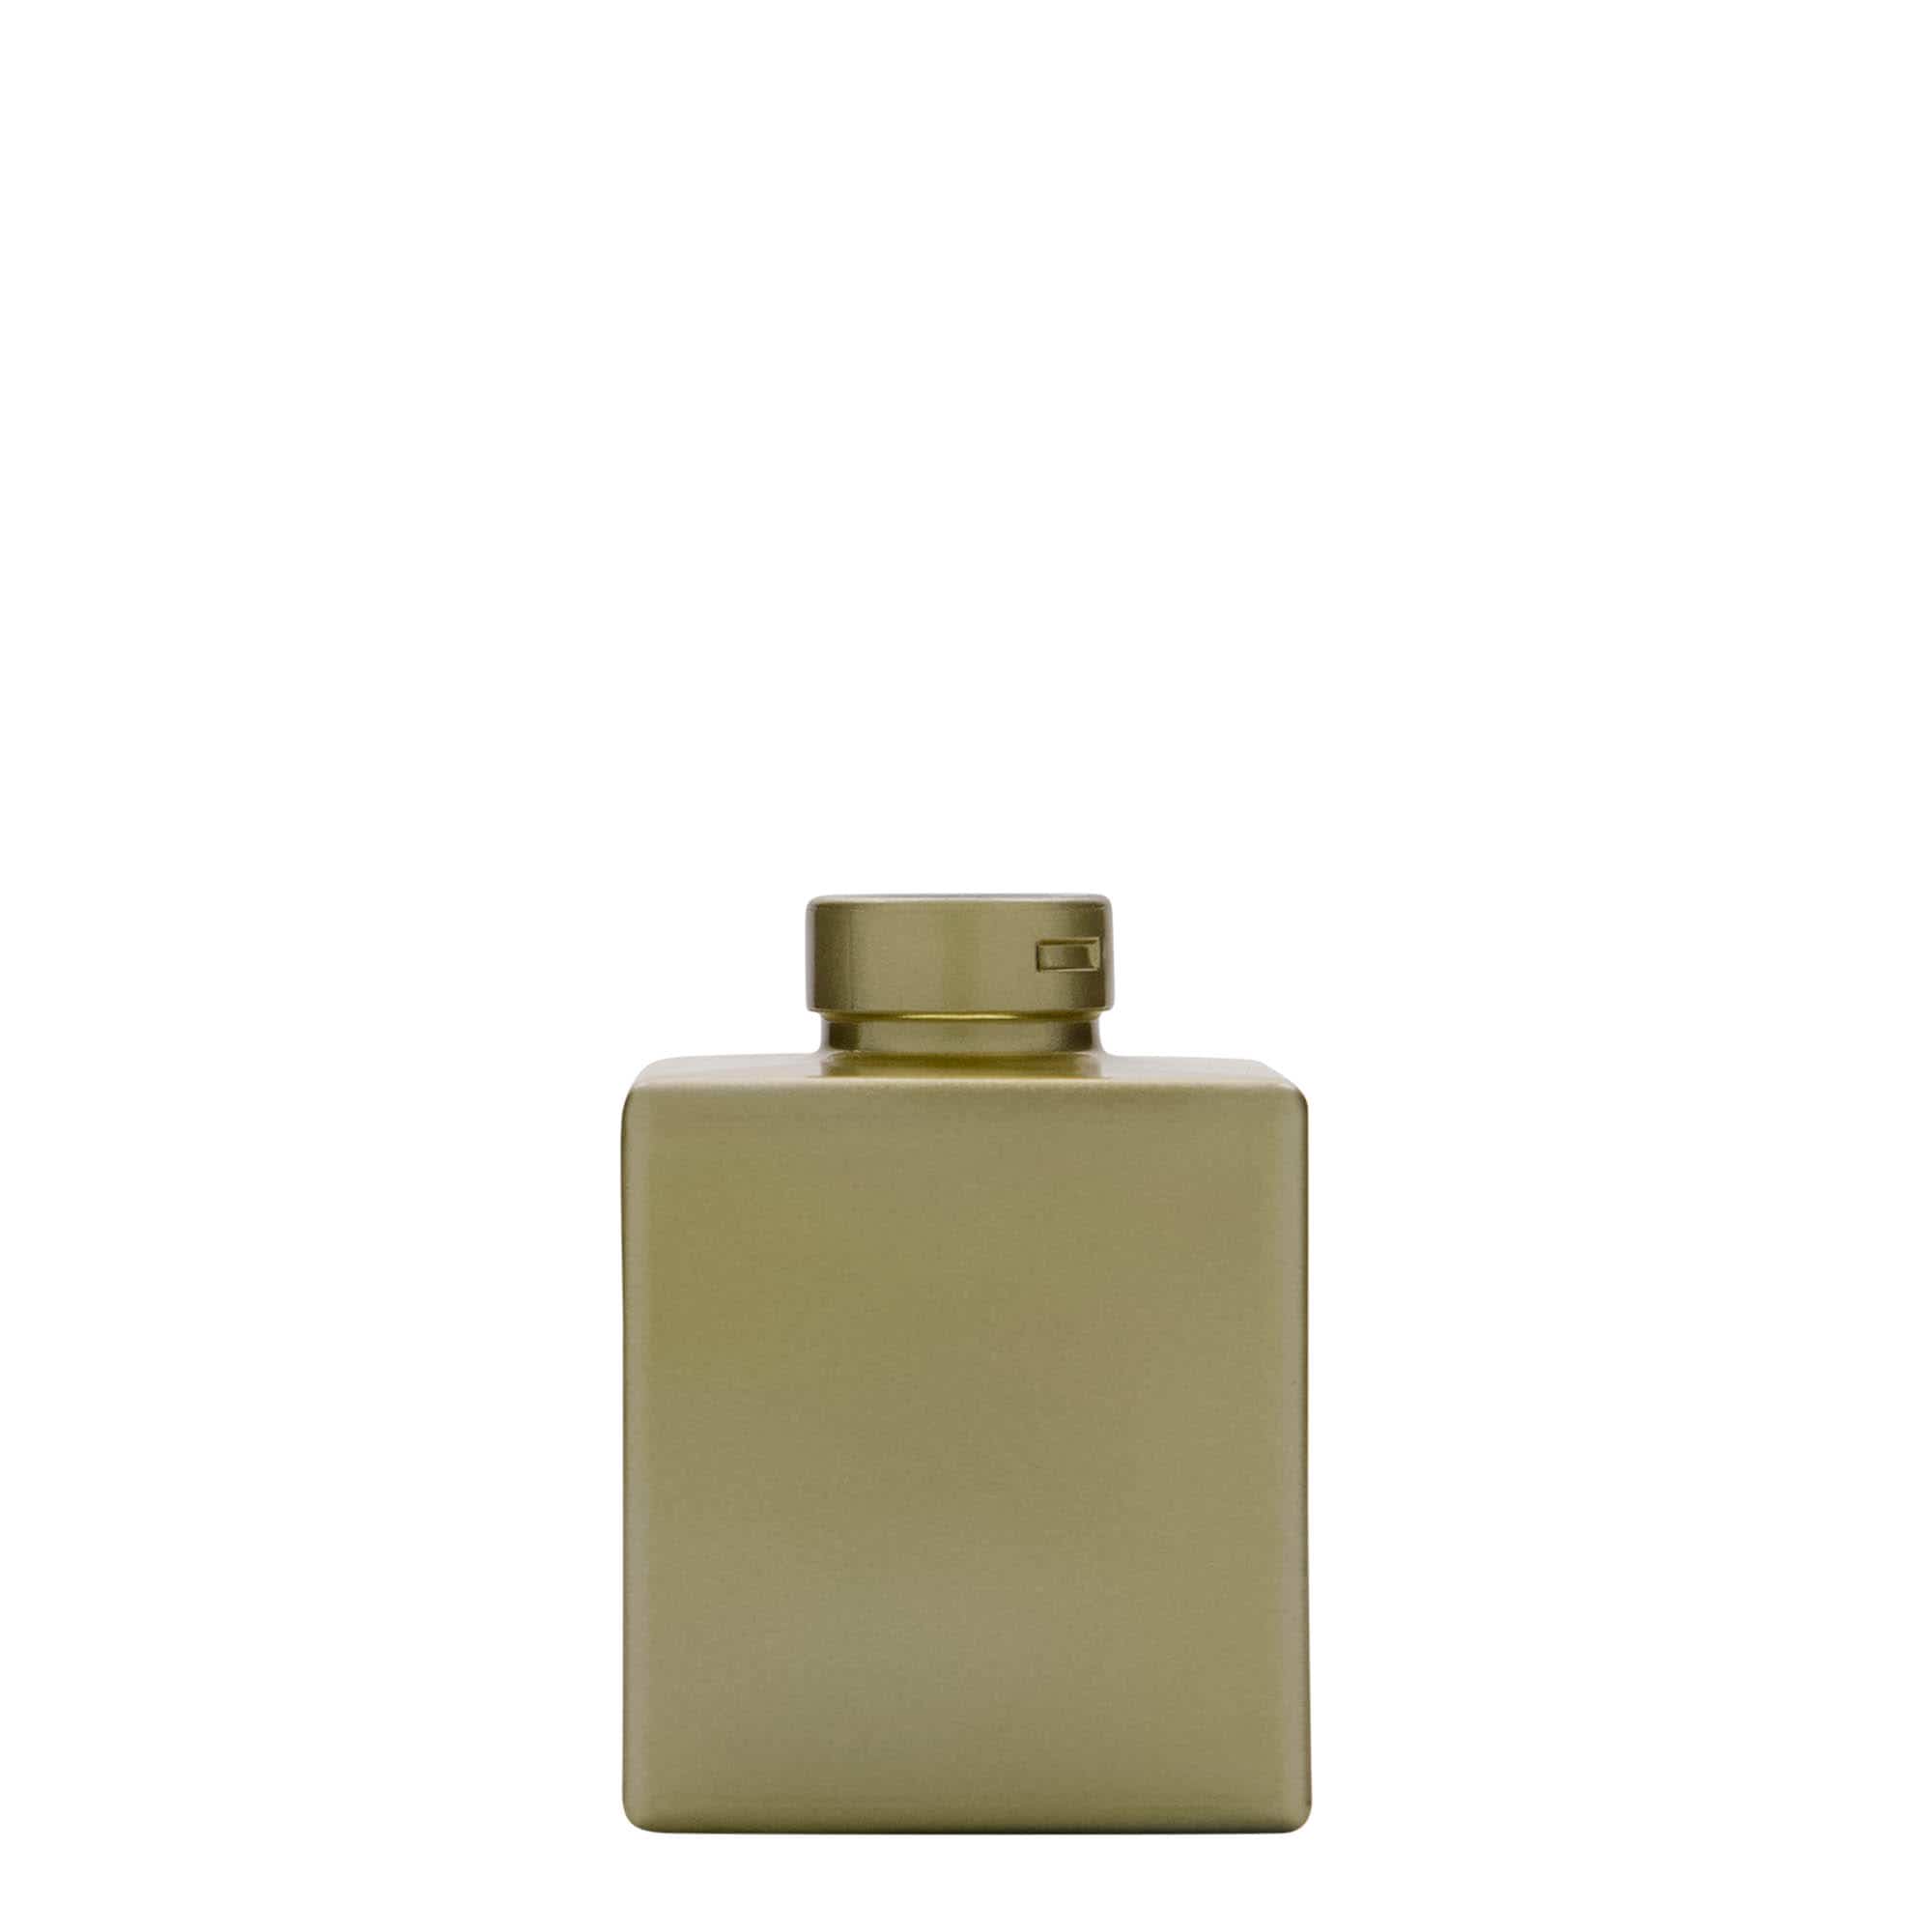 100 ml glasflaske 'Cube', kvadratisk, guld, åbning: Kork